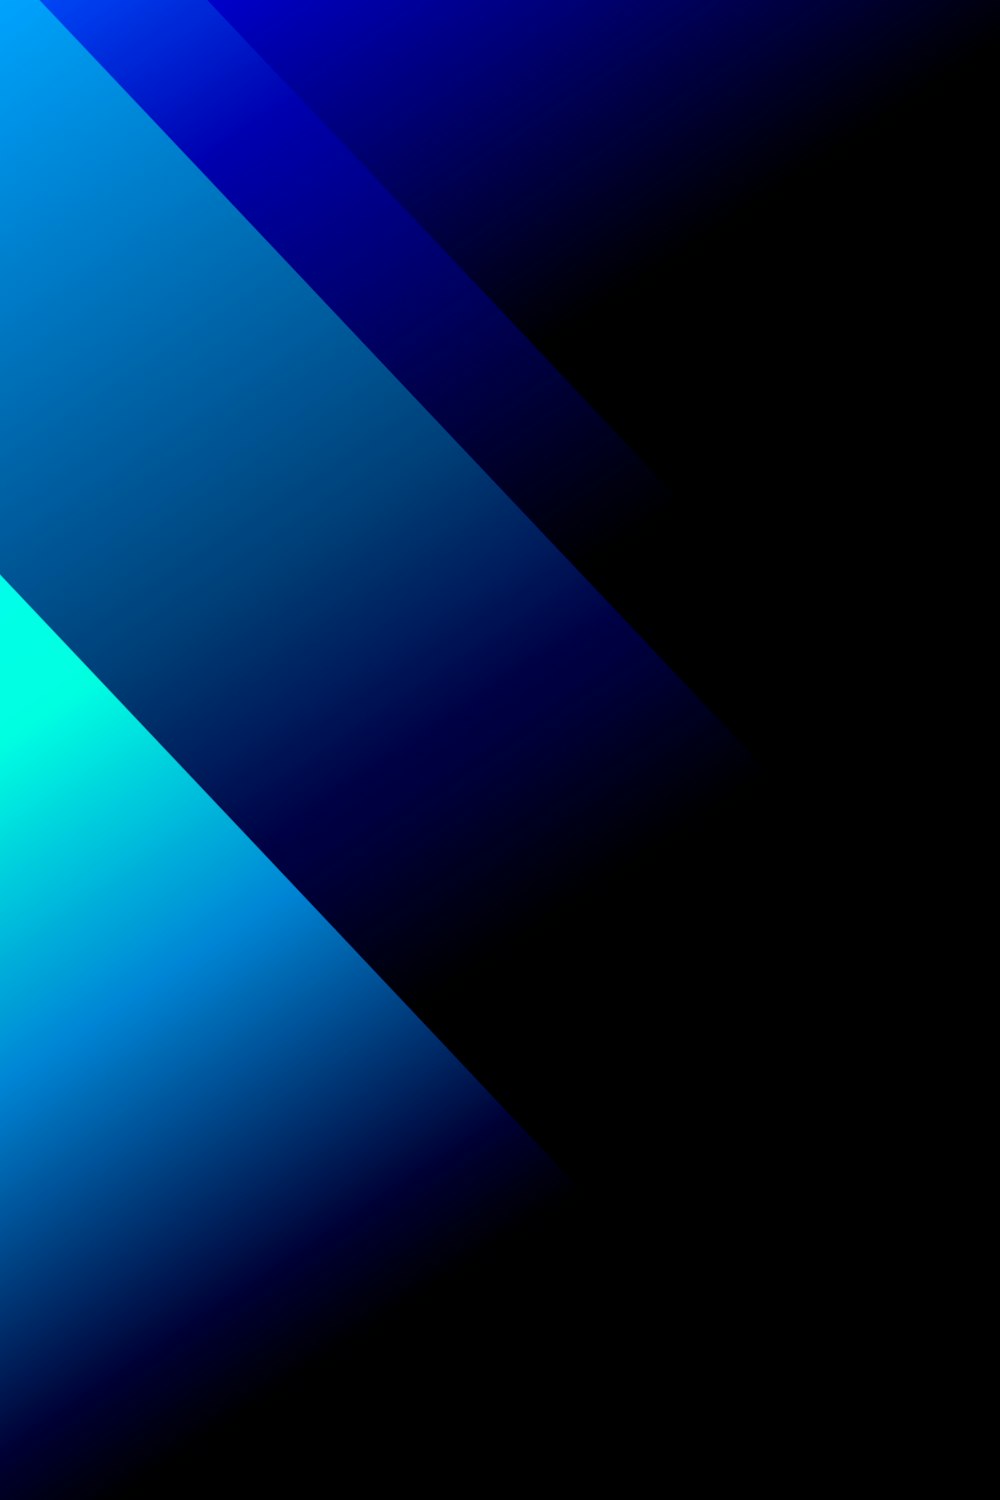 papel de parede digital azul e preto